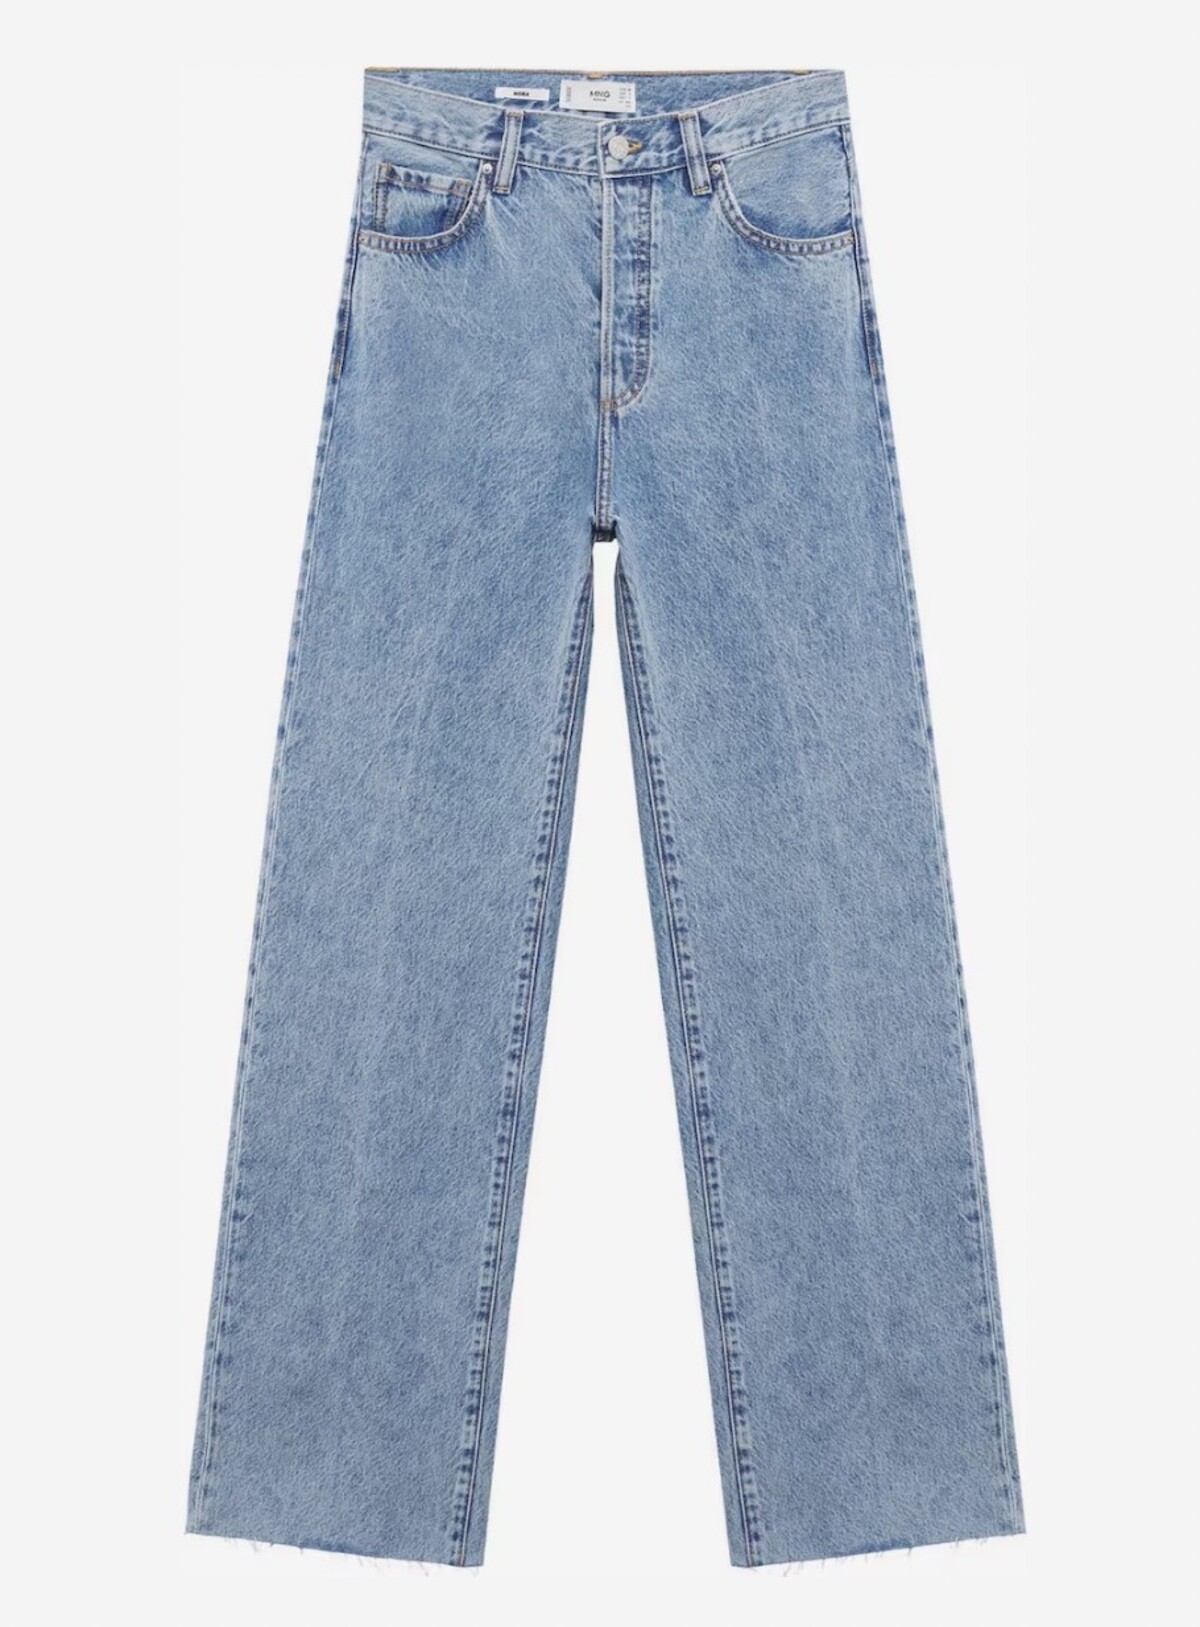 Svetlomodré džínsy MANGO si zaobstaráš za 39,90 €, avšak strihom pripomínajú parádny dizajnérsky model. Značka MANGO aj v tomto prípade dokazuje, že menej je niekedy viac.